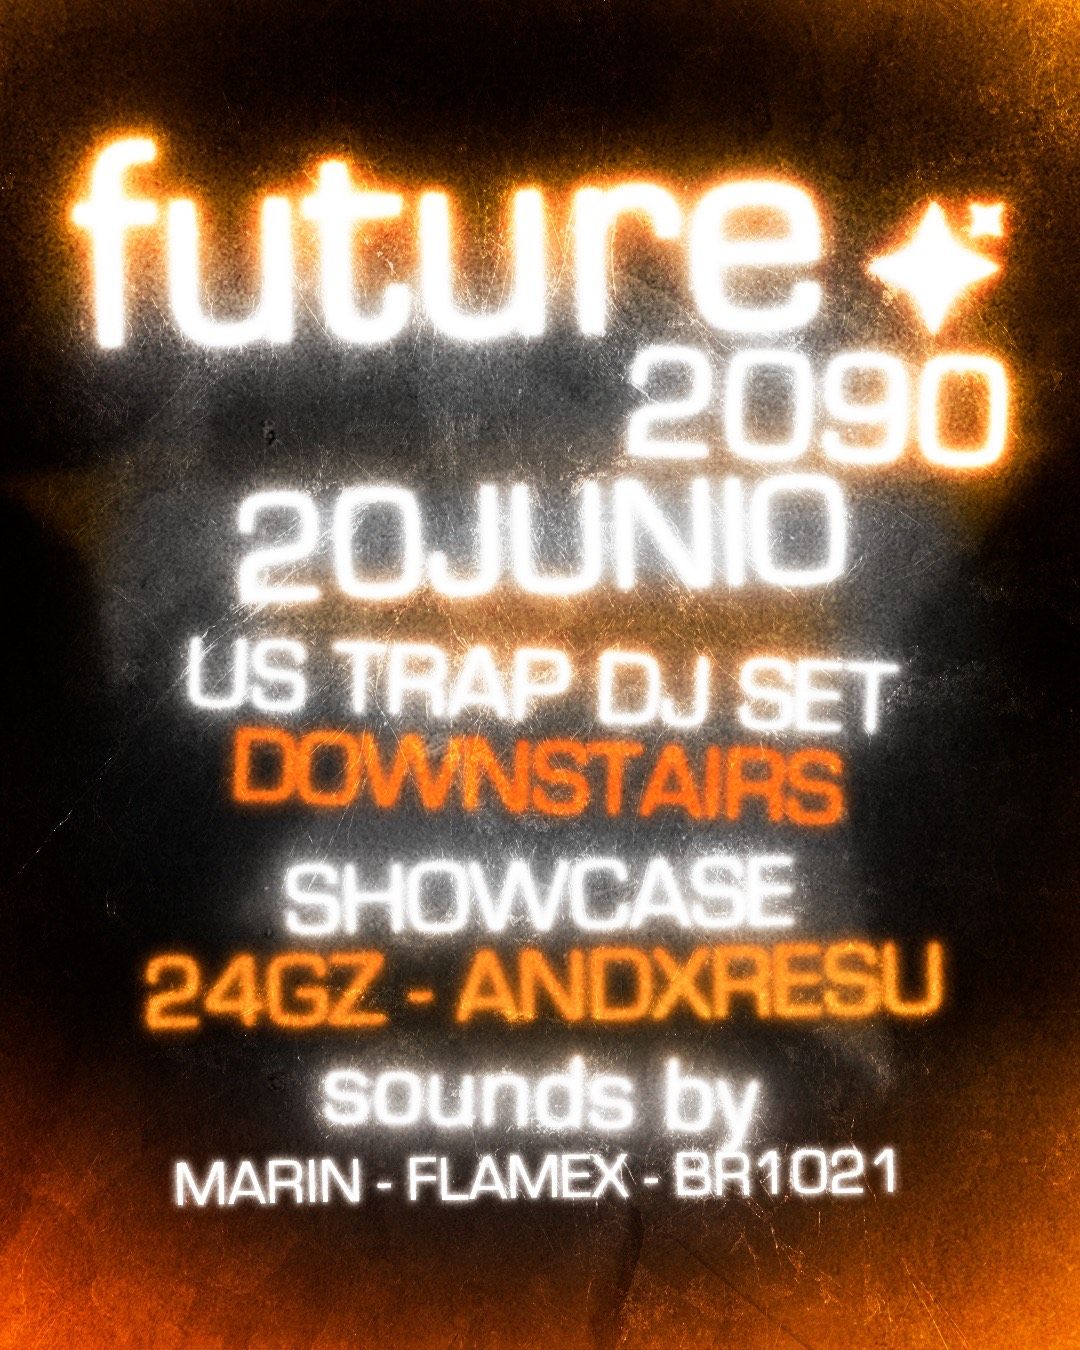 Future2090:  24GZ +ANDXRESU + Flamex + BR1021